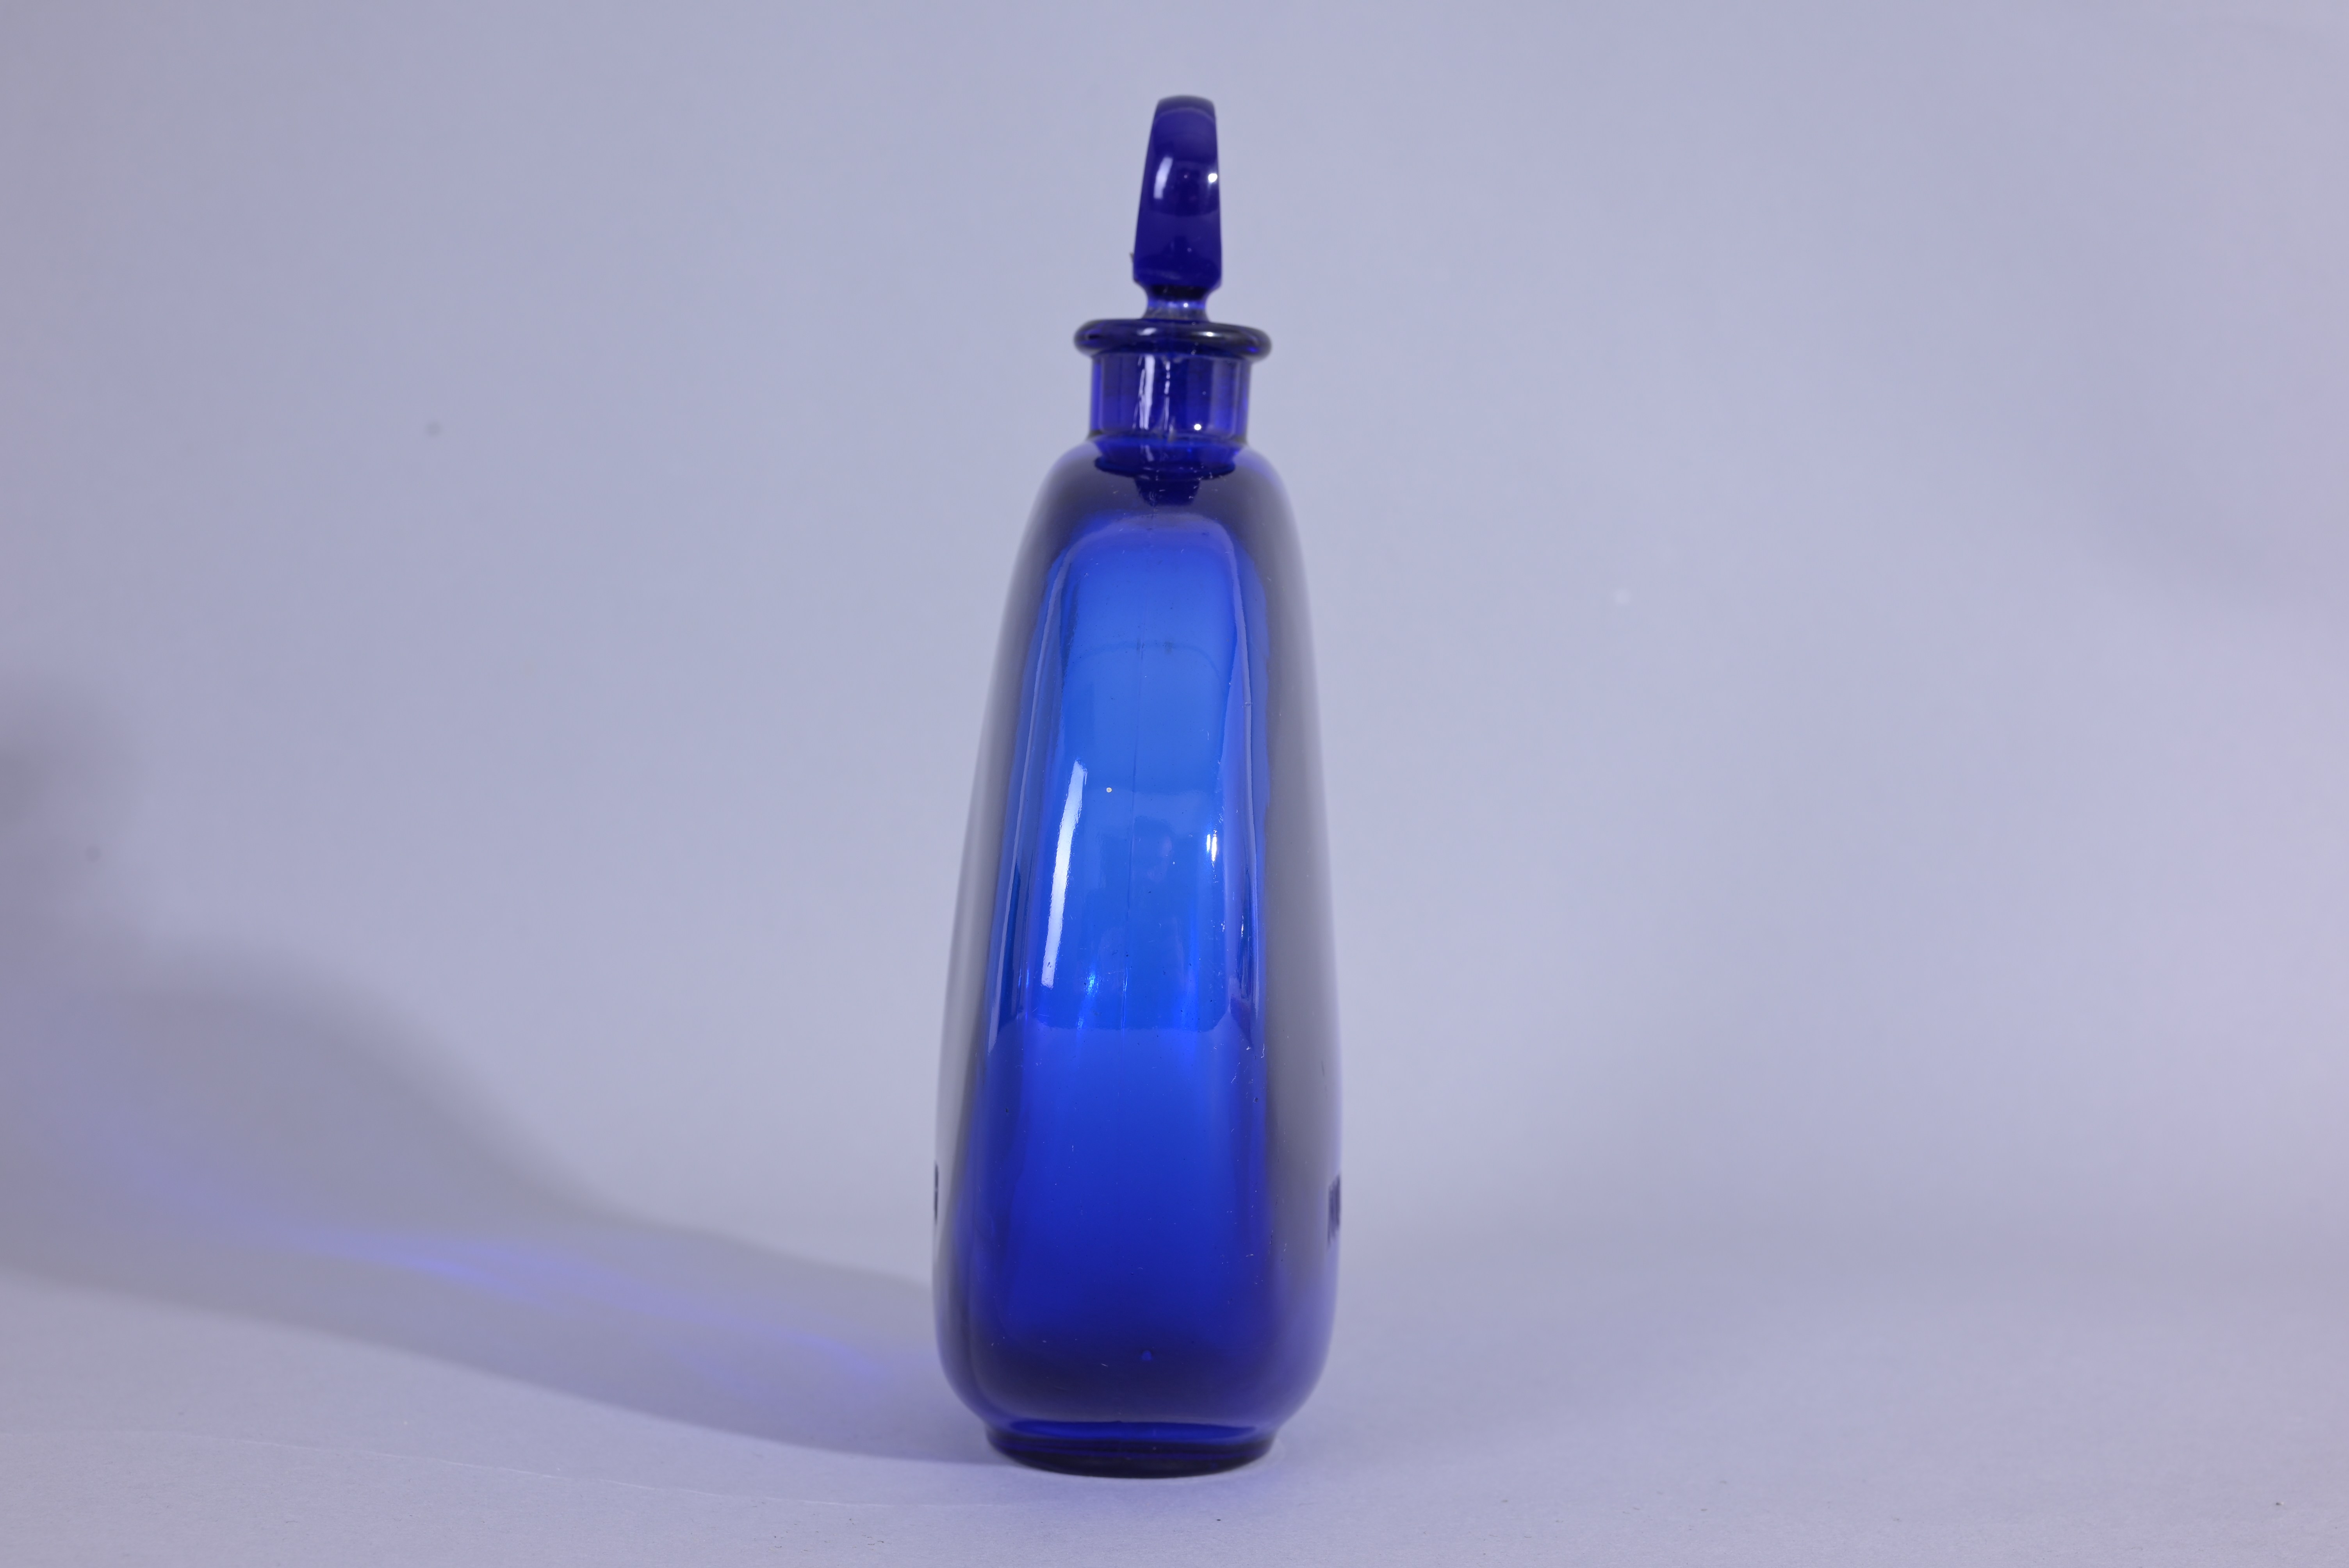 R. Lalique "Dans La Nuit" Glass Perfume Bottle - Image 6 of 7